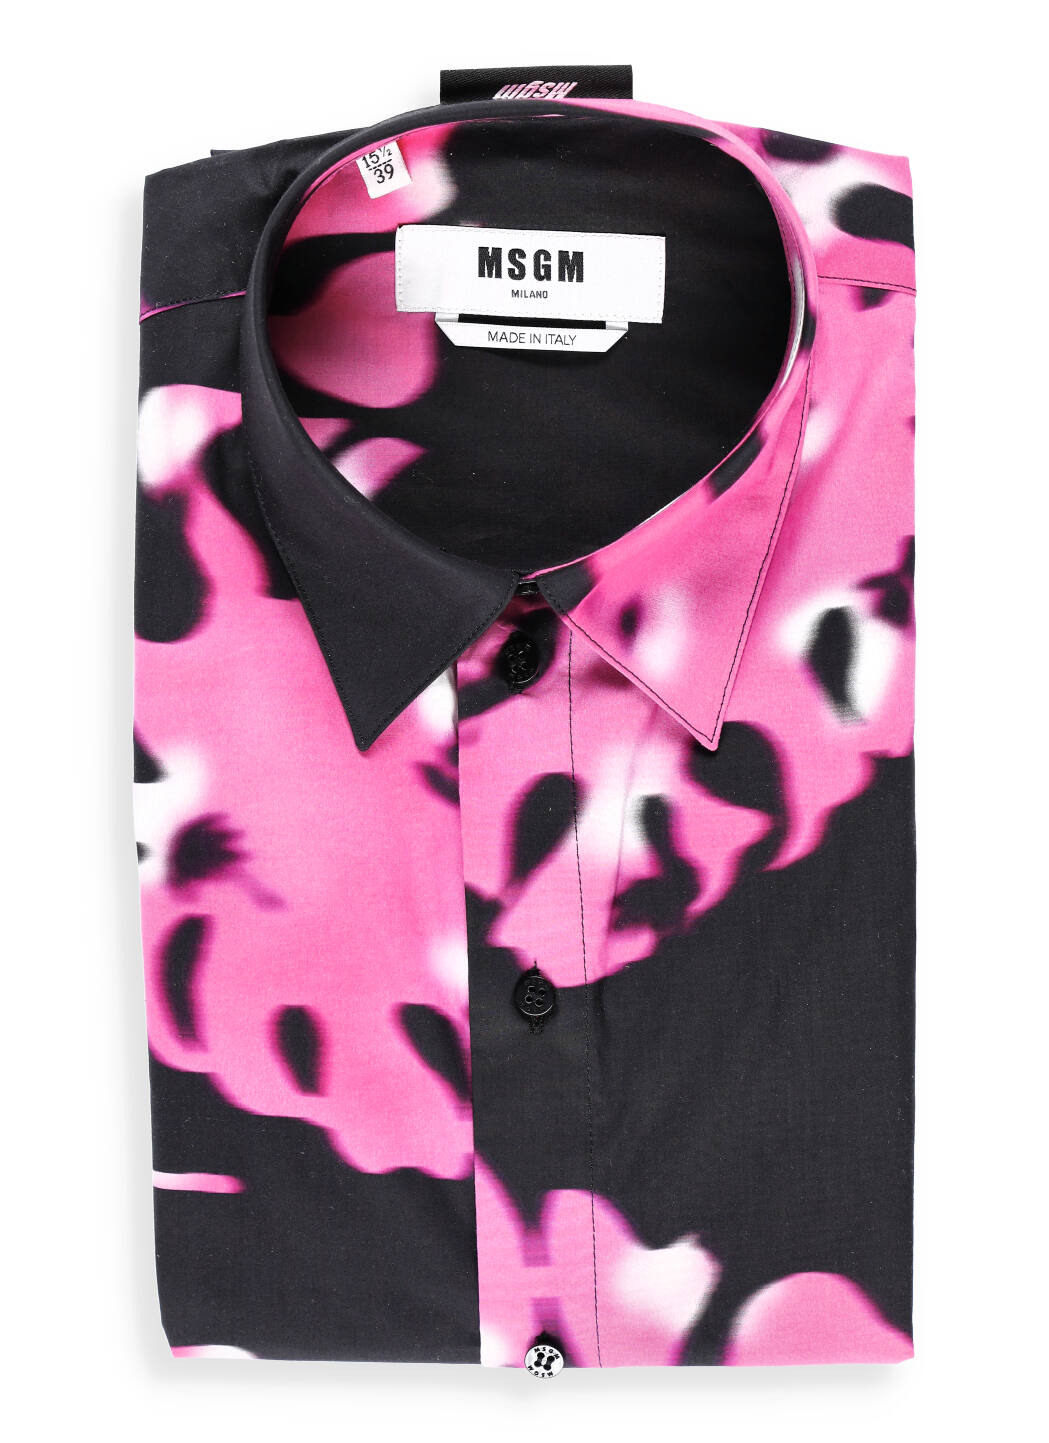 Msgm Bicolor Print Shirt In Black/pink